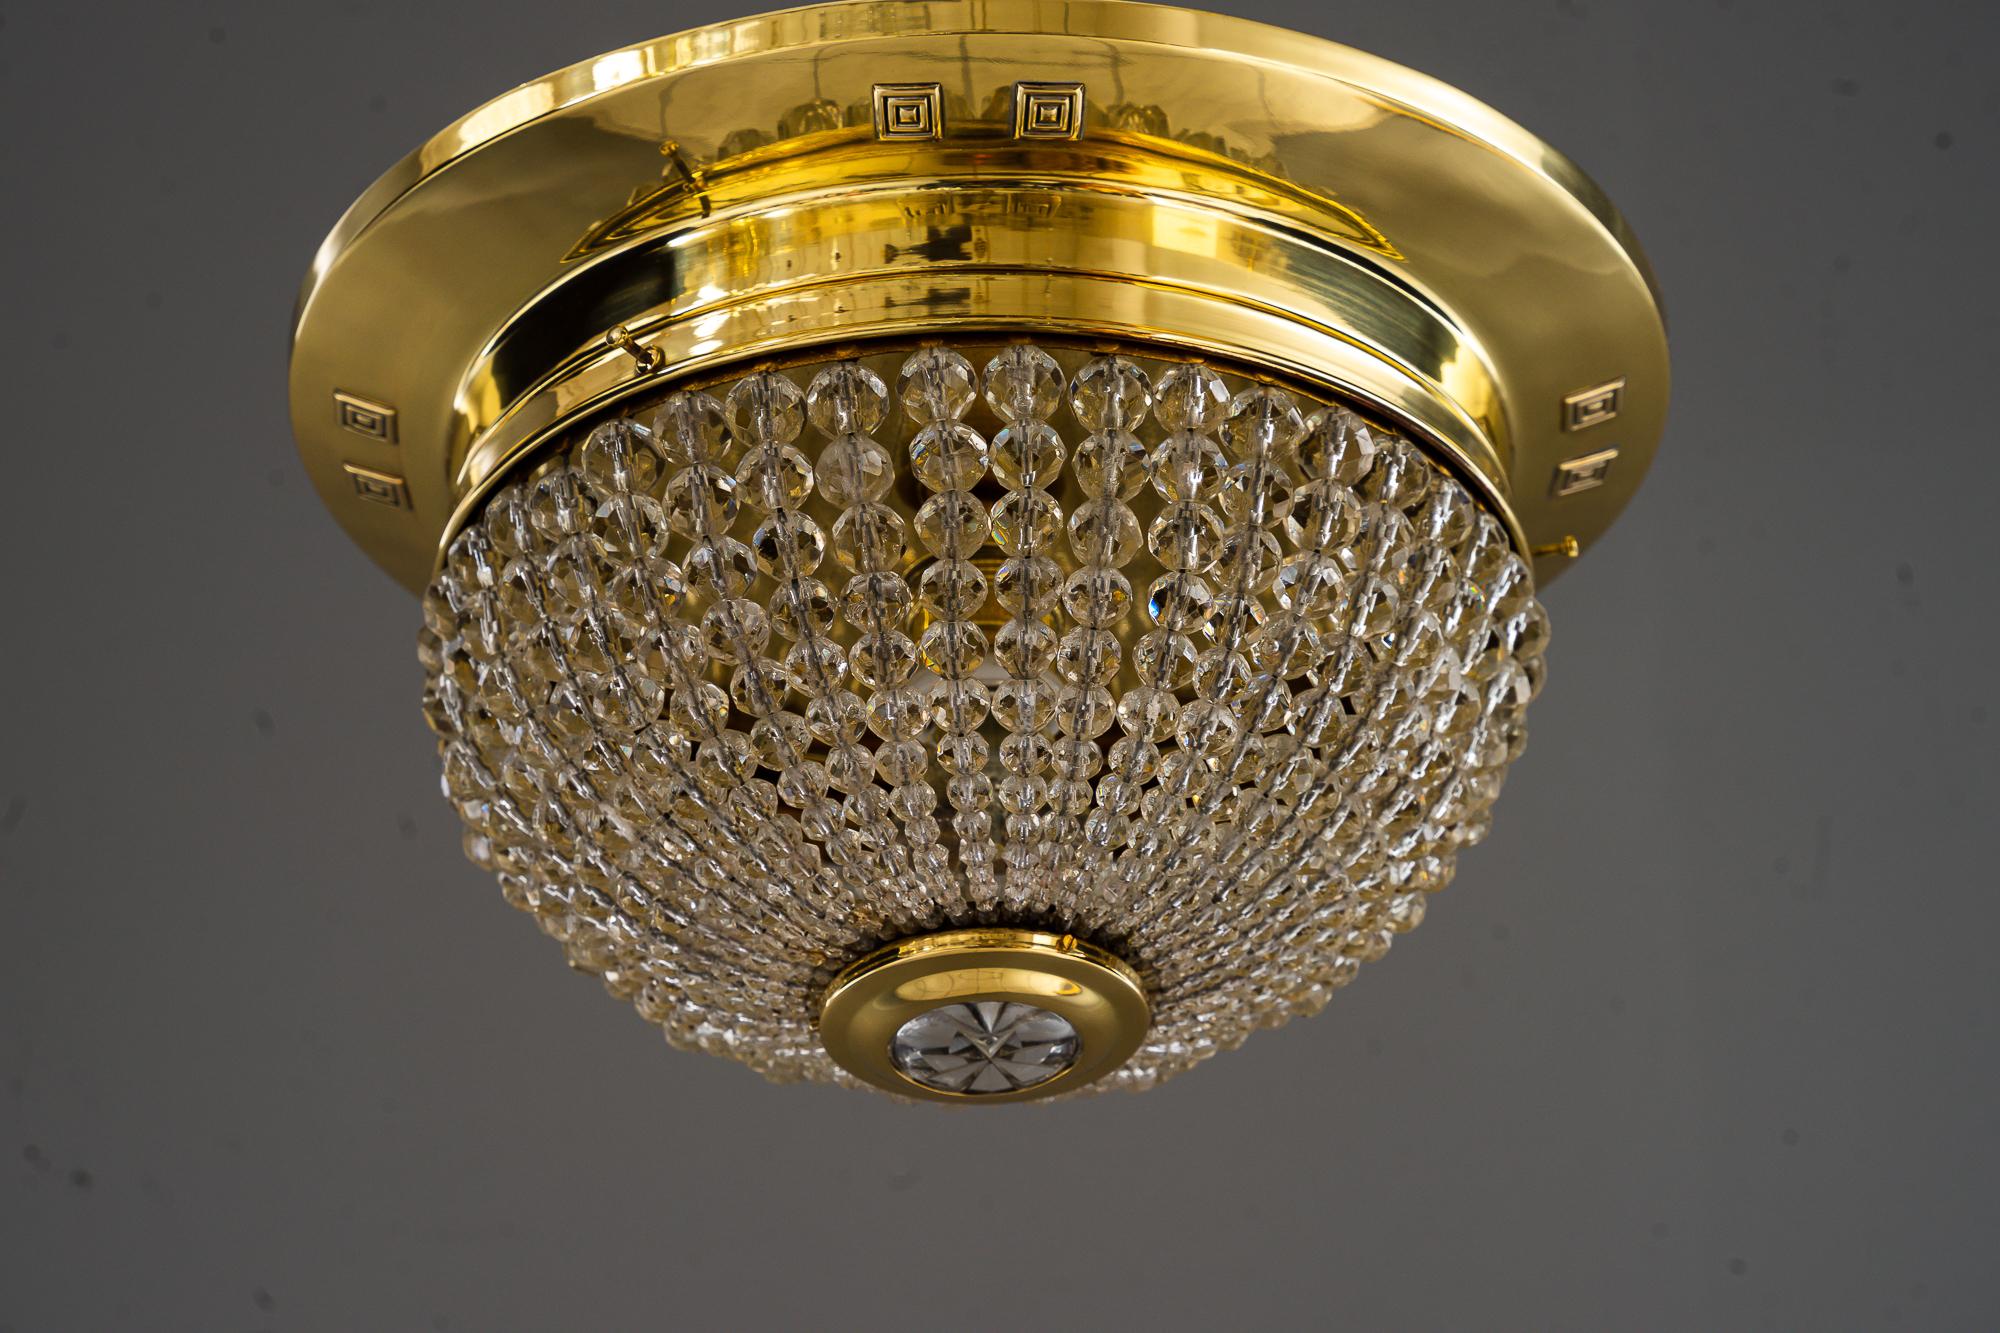 Deckenleuchte Vienna im Art déco-Stil, ca. 1920er Jahre
Poliert und emailliert
Original geschliffene Glaskugeln
Der Glaskugelteil ist zum Auswechseln der Glühbirne abnehmbar
1 Glühbirne innen.